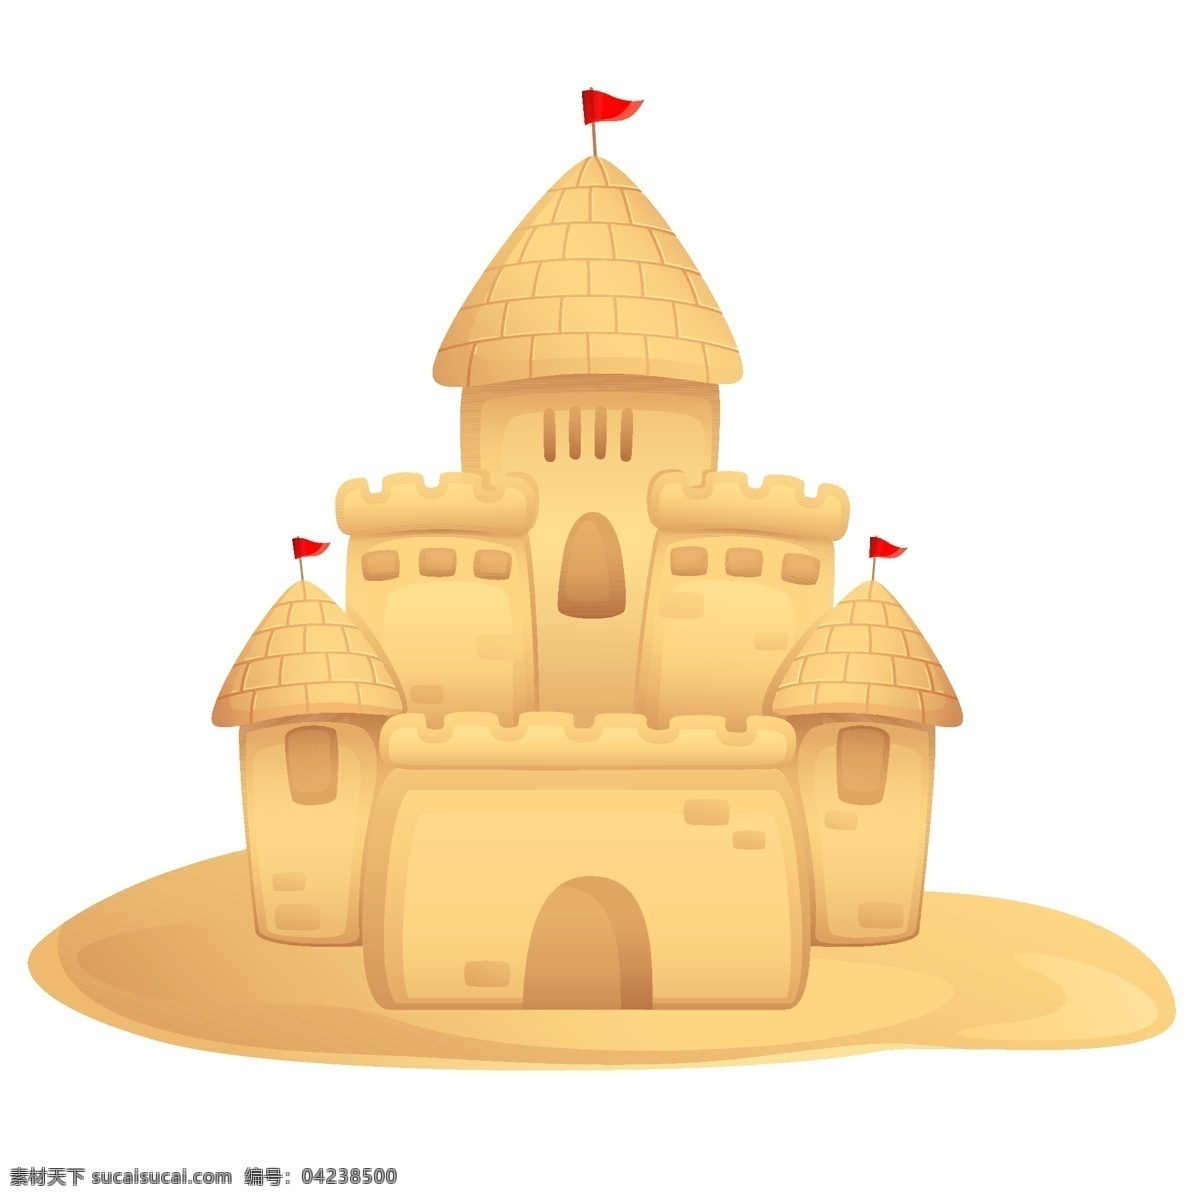 沙堆矢量图 矢量图 矢量文件 城堡 沙子 沙子矢量图 沙子城堡 沙城堡 城堡矢量图